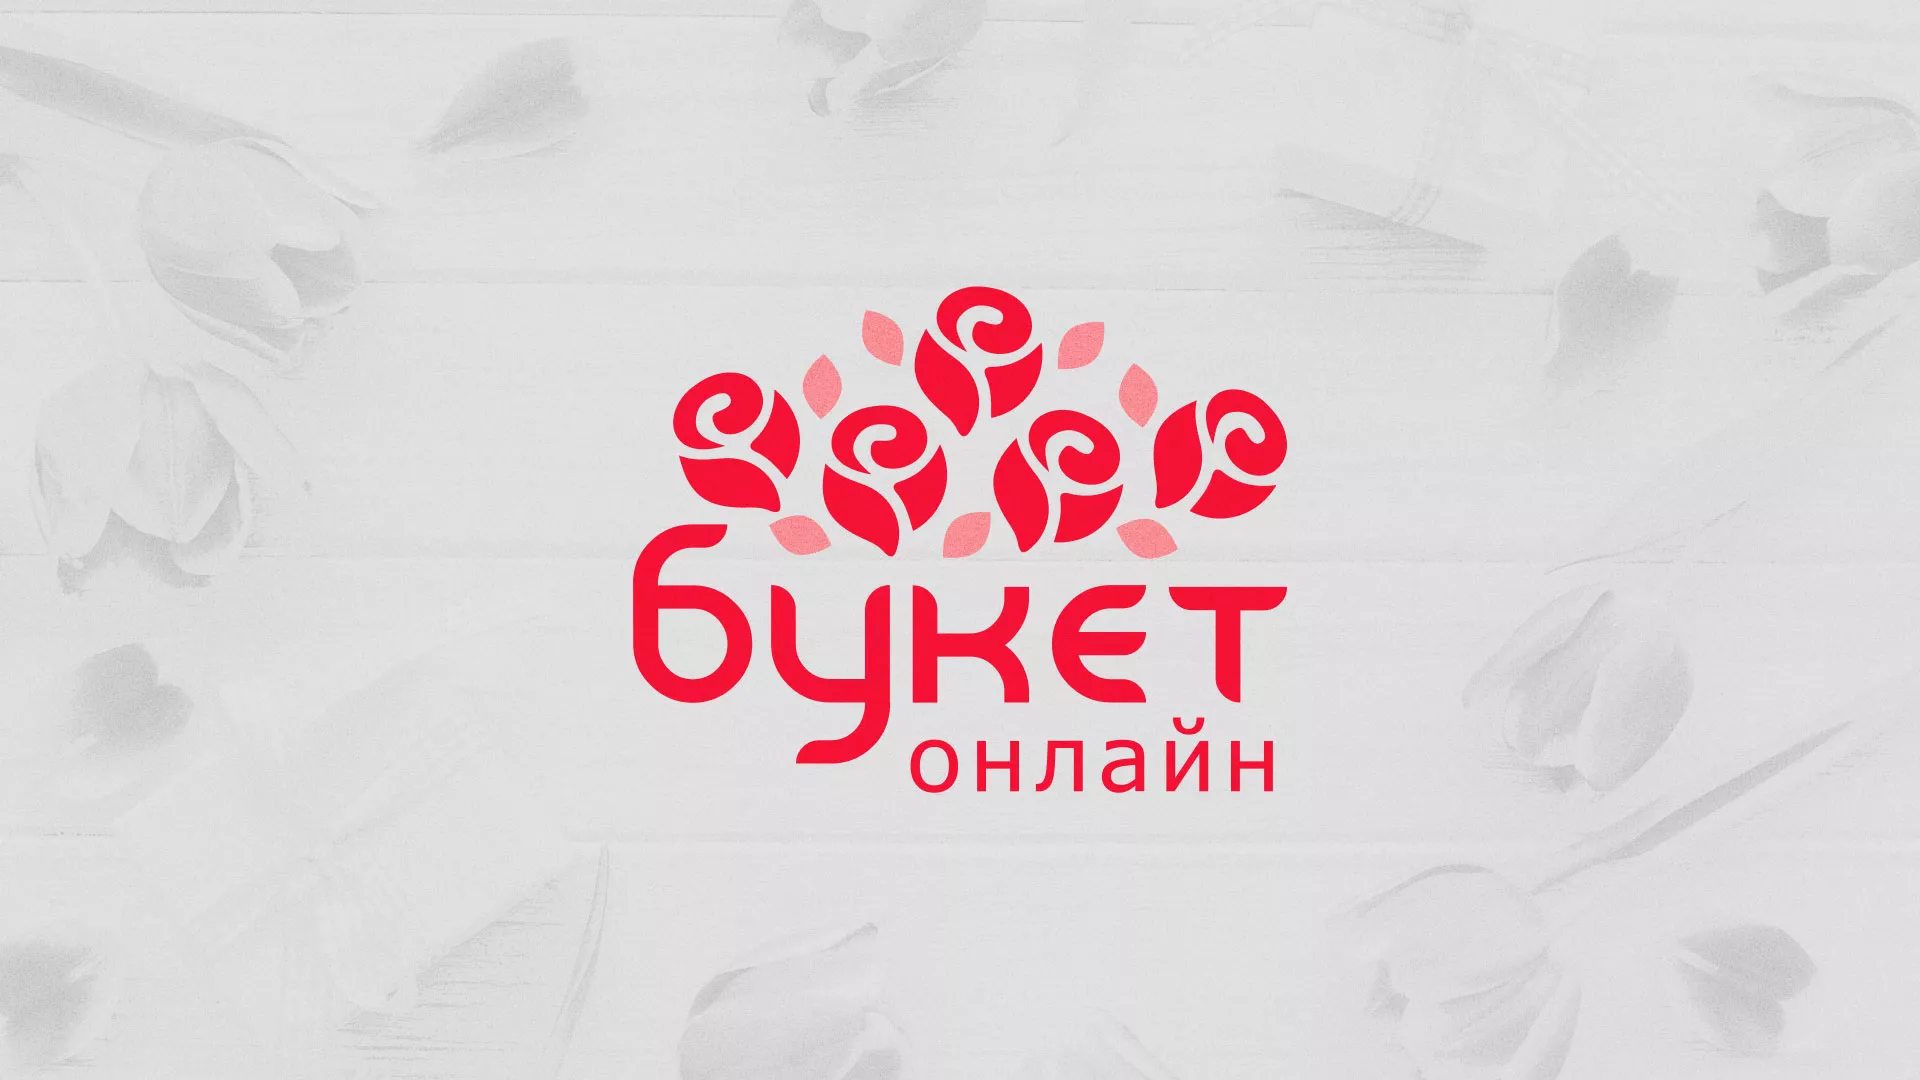 Создание интернет-магазина «Букет-онлайн» по цветам в Грозном